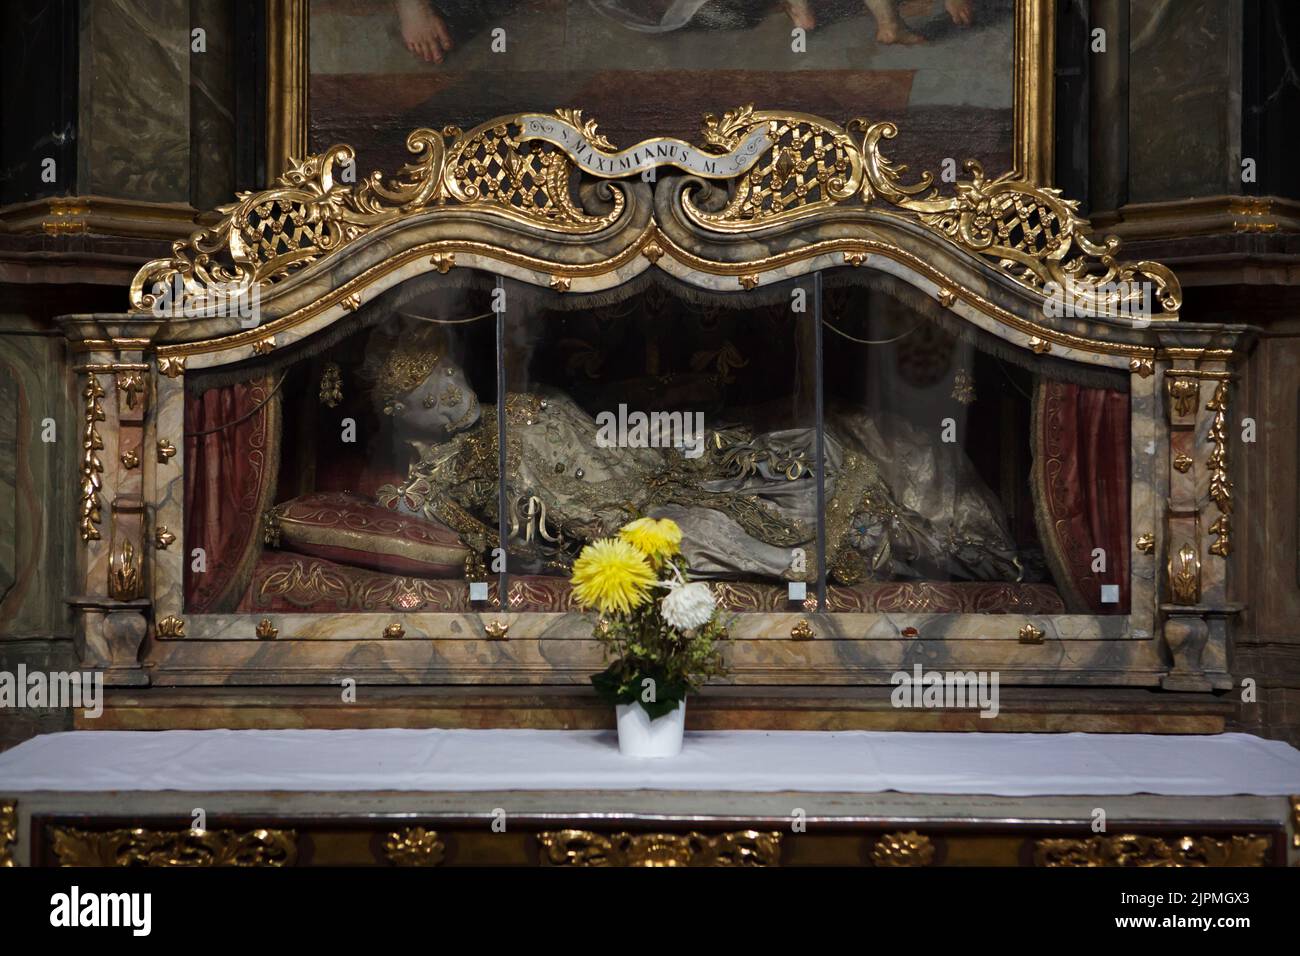 Le reliquie di San Maximianus sono esposte nella basilica del monastero del Kloster Sankt Emmeram (Abbazia di San Emmeram) a Ratisbona, in Baviera, Germania. Foto Stock